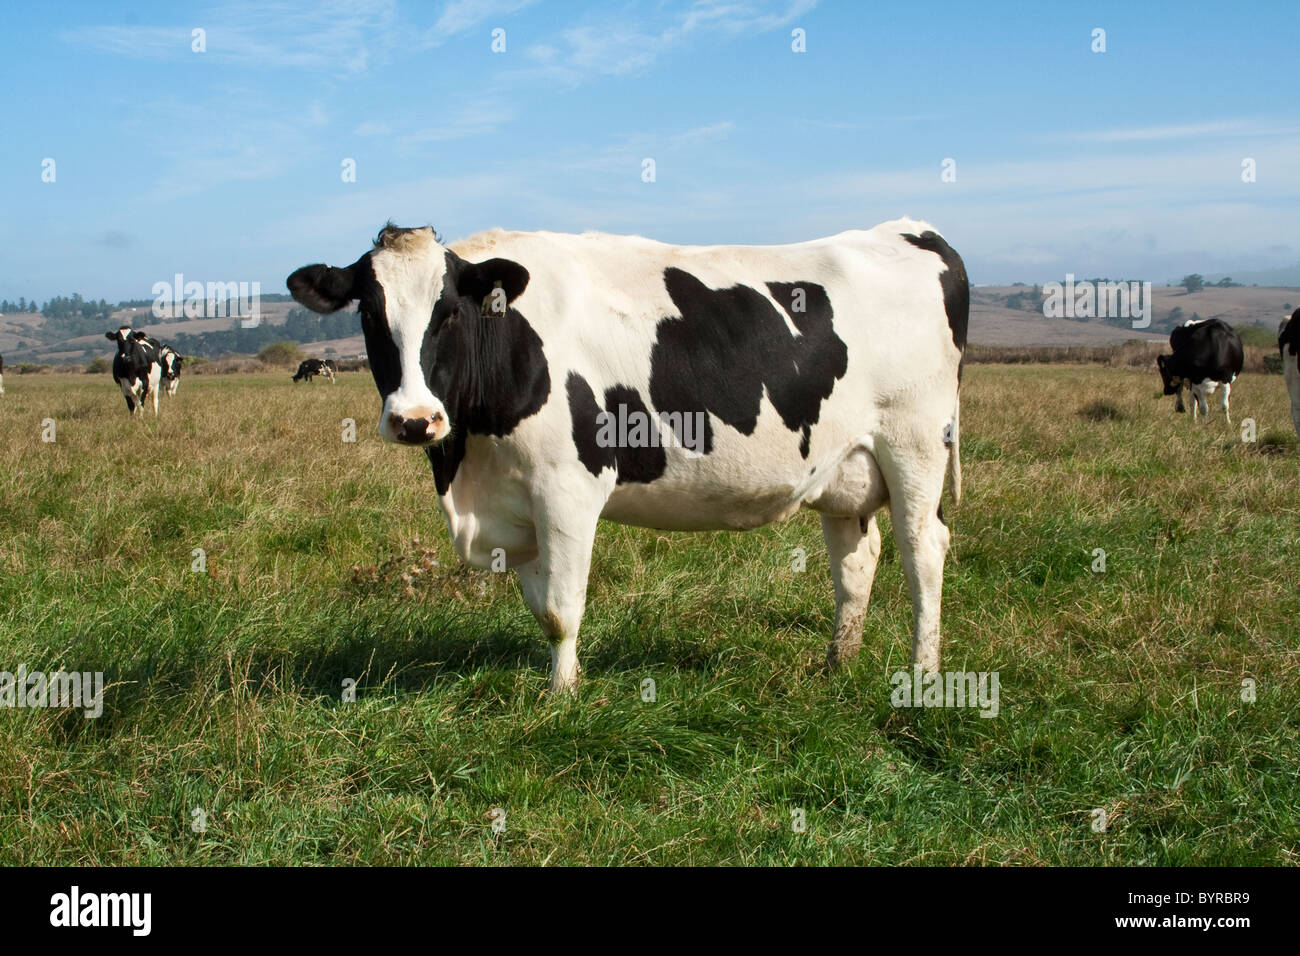 Les vaches laitières Holstein en croissance interne des pâturages. Ce troupeau de vaches produisent du lait organique / Humboldt County, Californie, USA. Banque D'Images